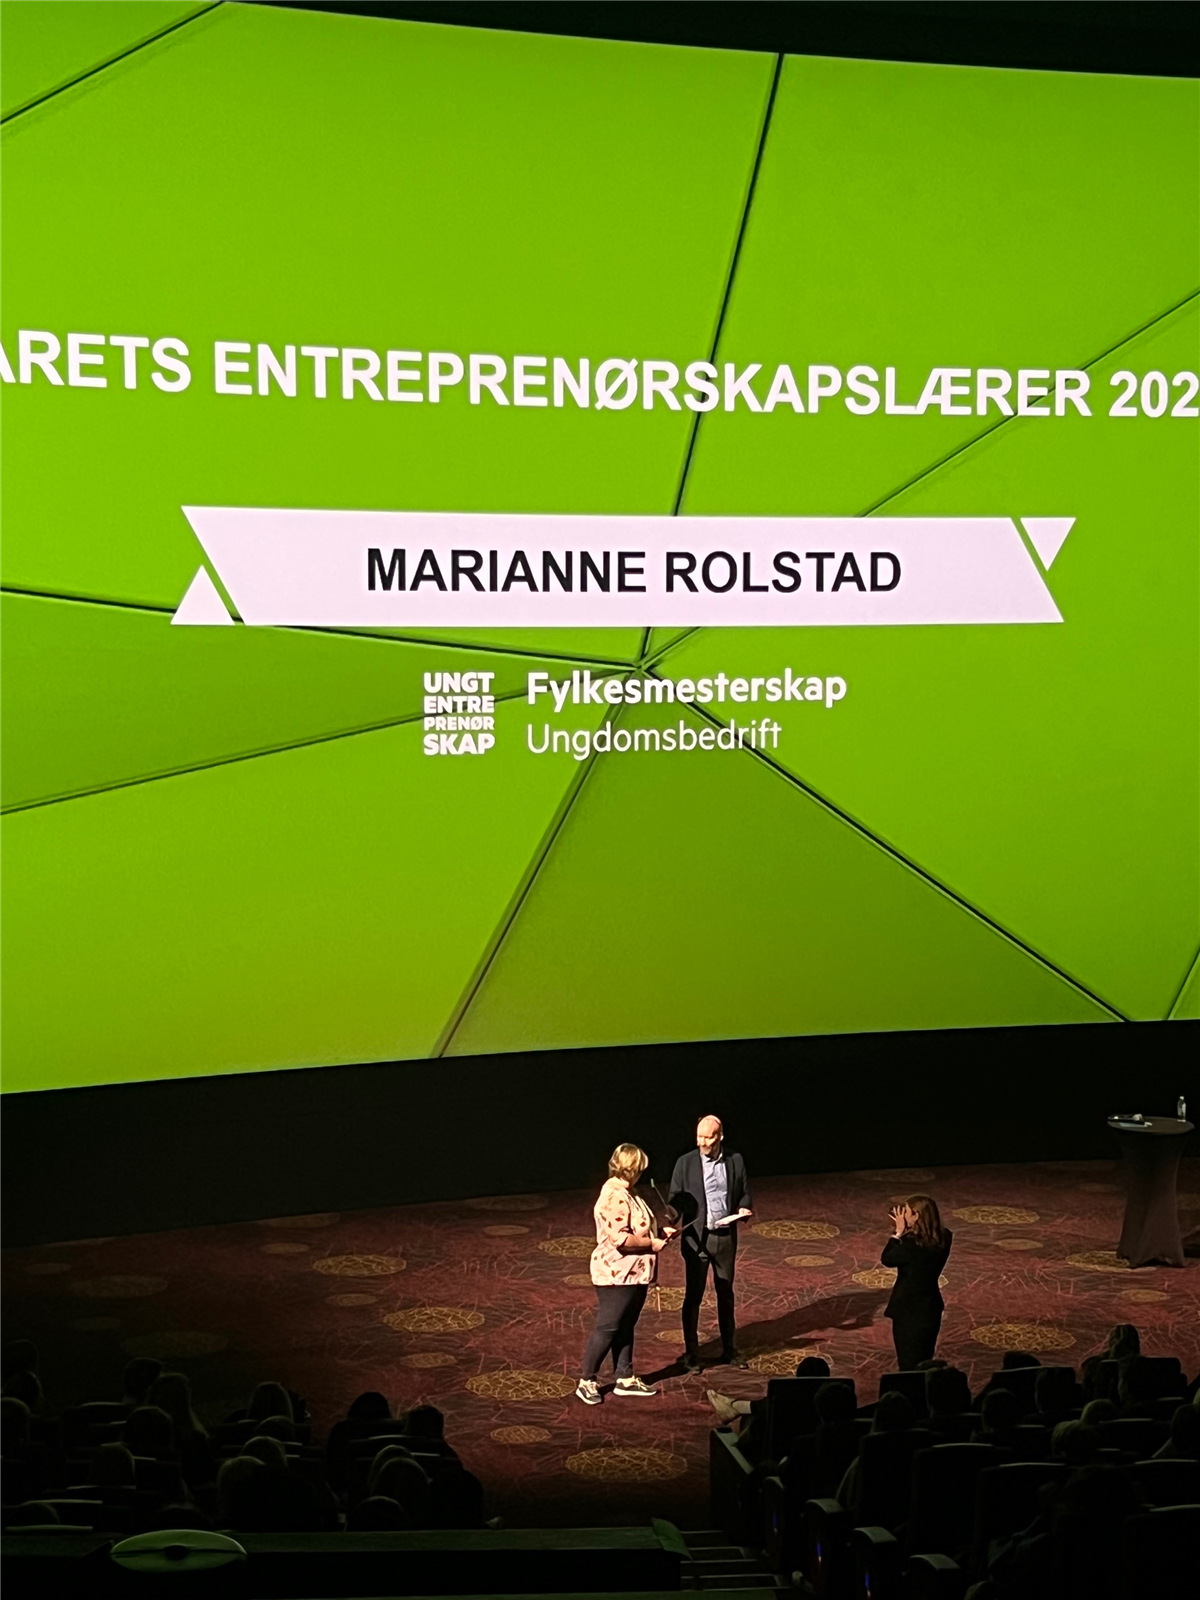 Marianne Rolstad mottar pris for beste entreprenørskapslærer - Klikk for stort bilde